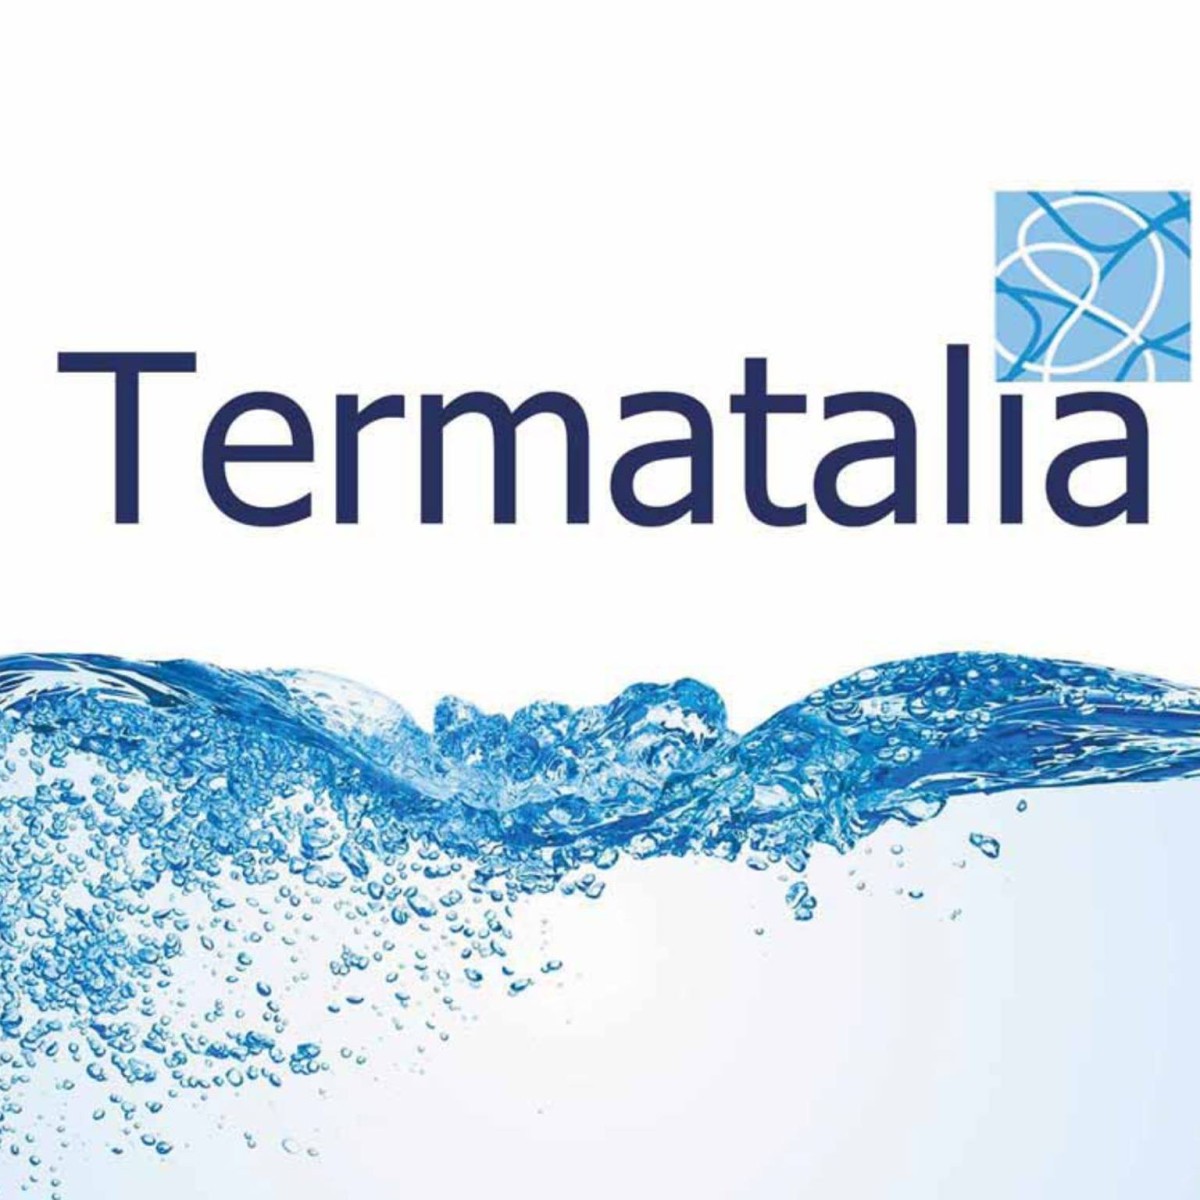 Uruguay está participando en Termatalia 2022